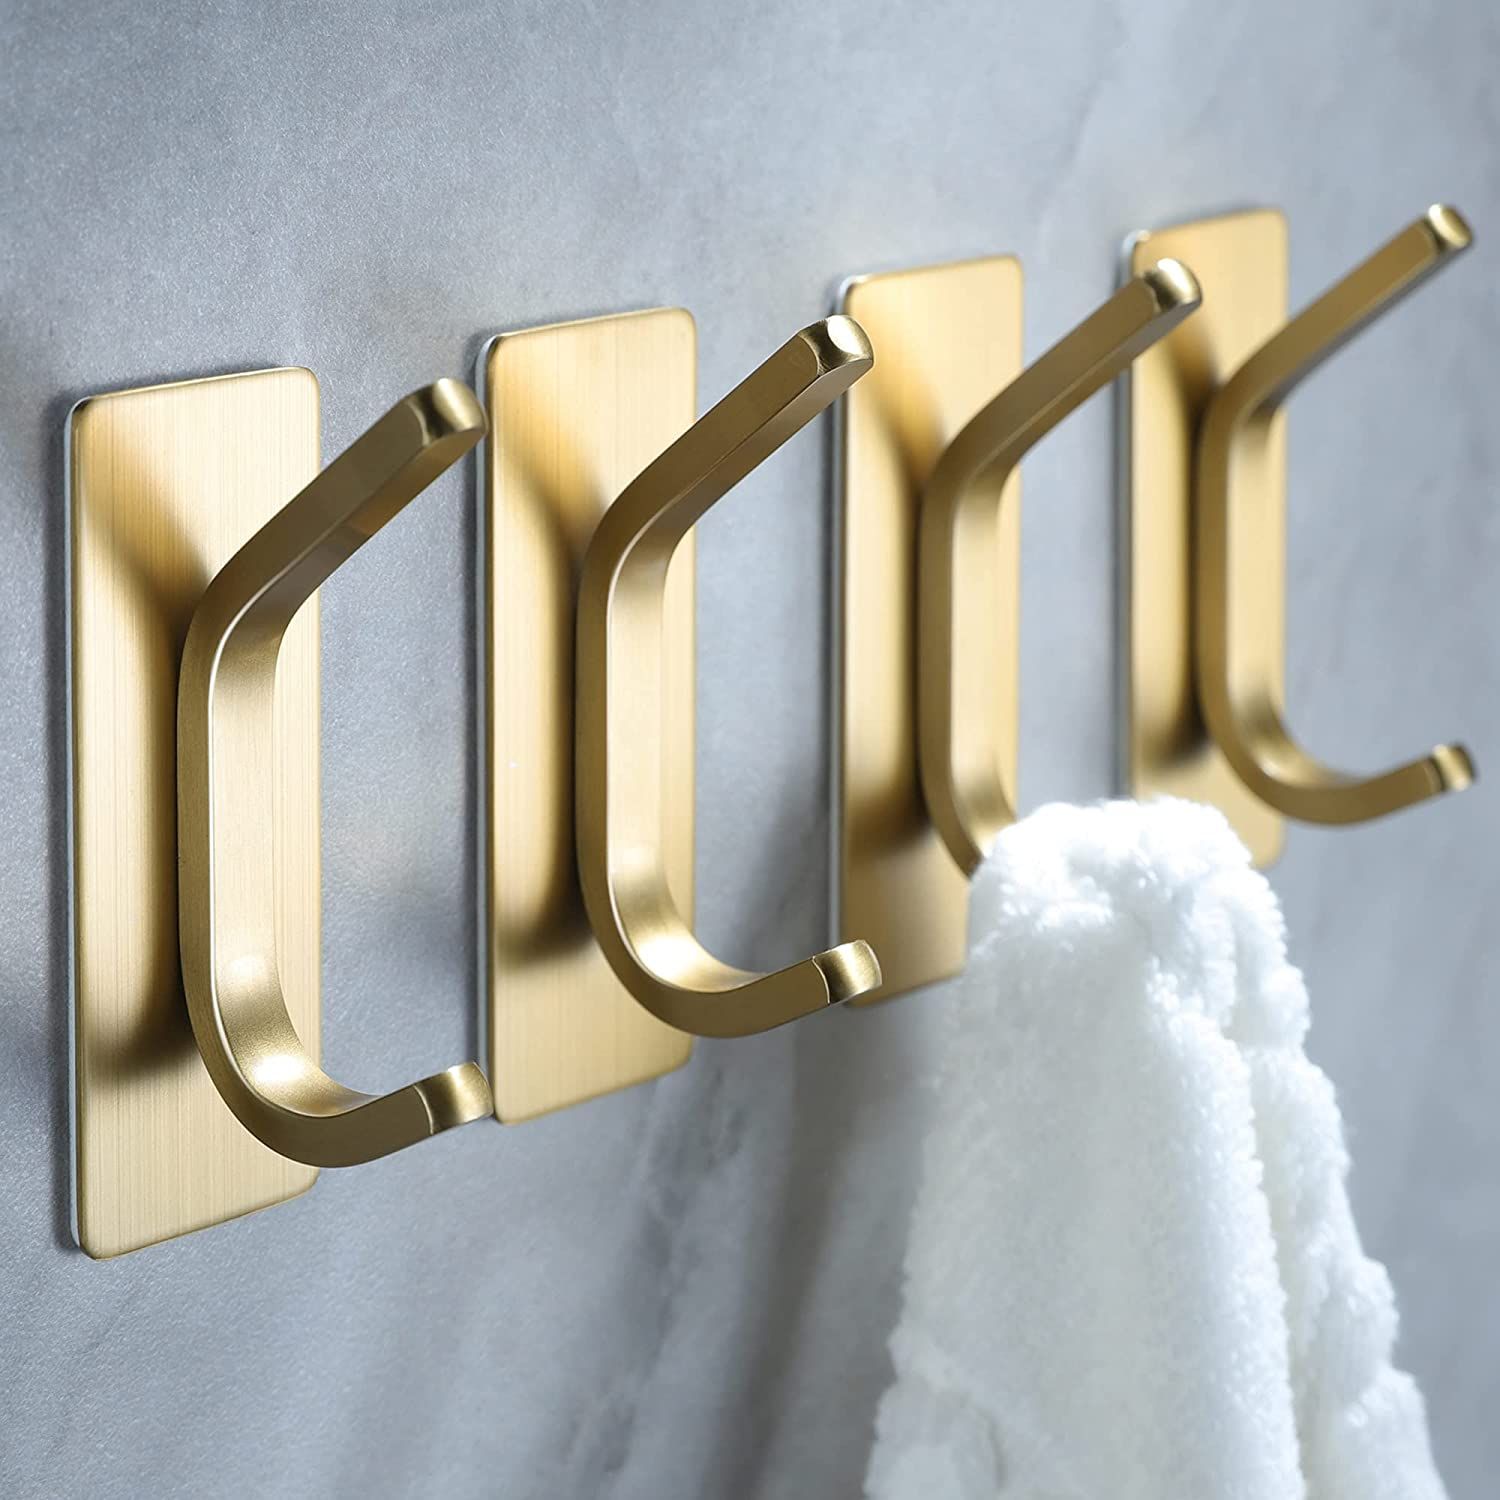 YIGII Towel Hooks/Adhesive Hooks - Brushed Gold Wall Hooks for Hanging Coat, Hat, Towel Robe Hook... | Amazon (US)